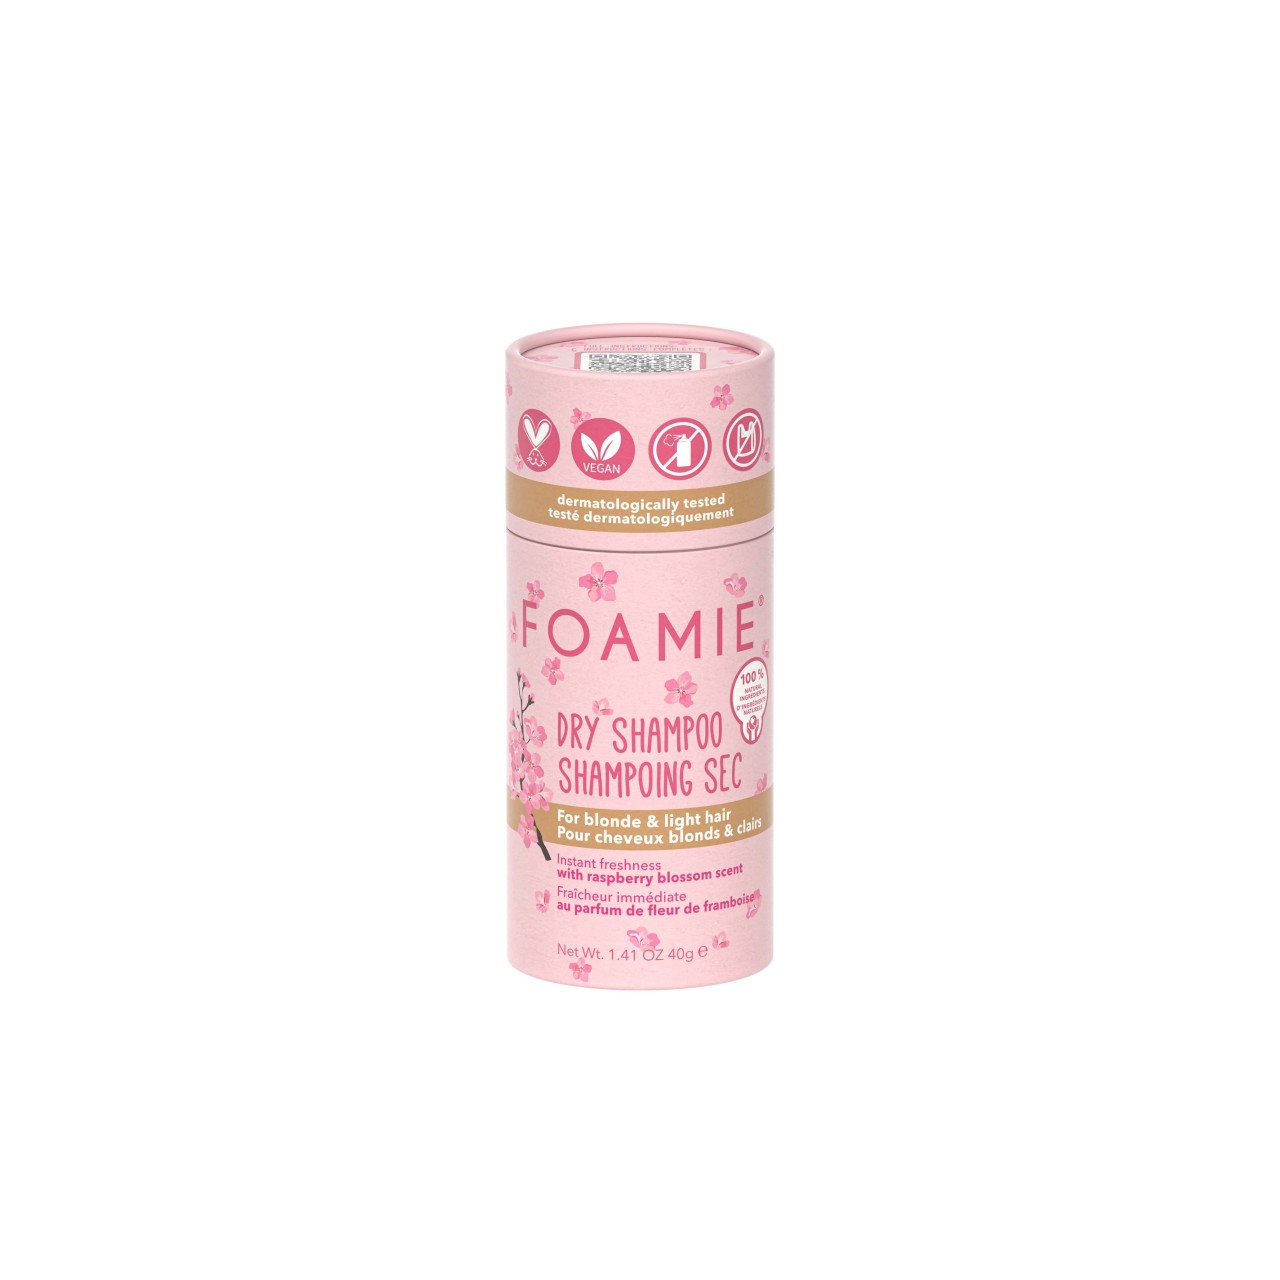 FOAMIE - Dry Shampoo Berry Blonde - 